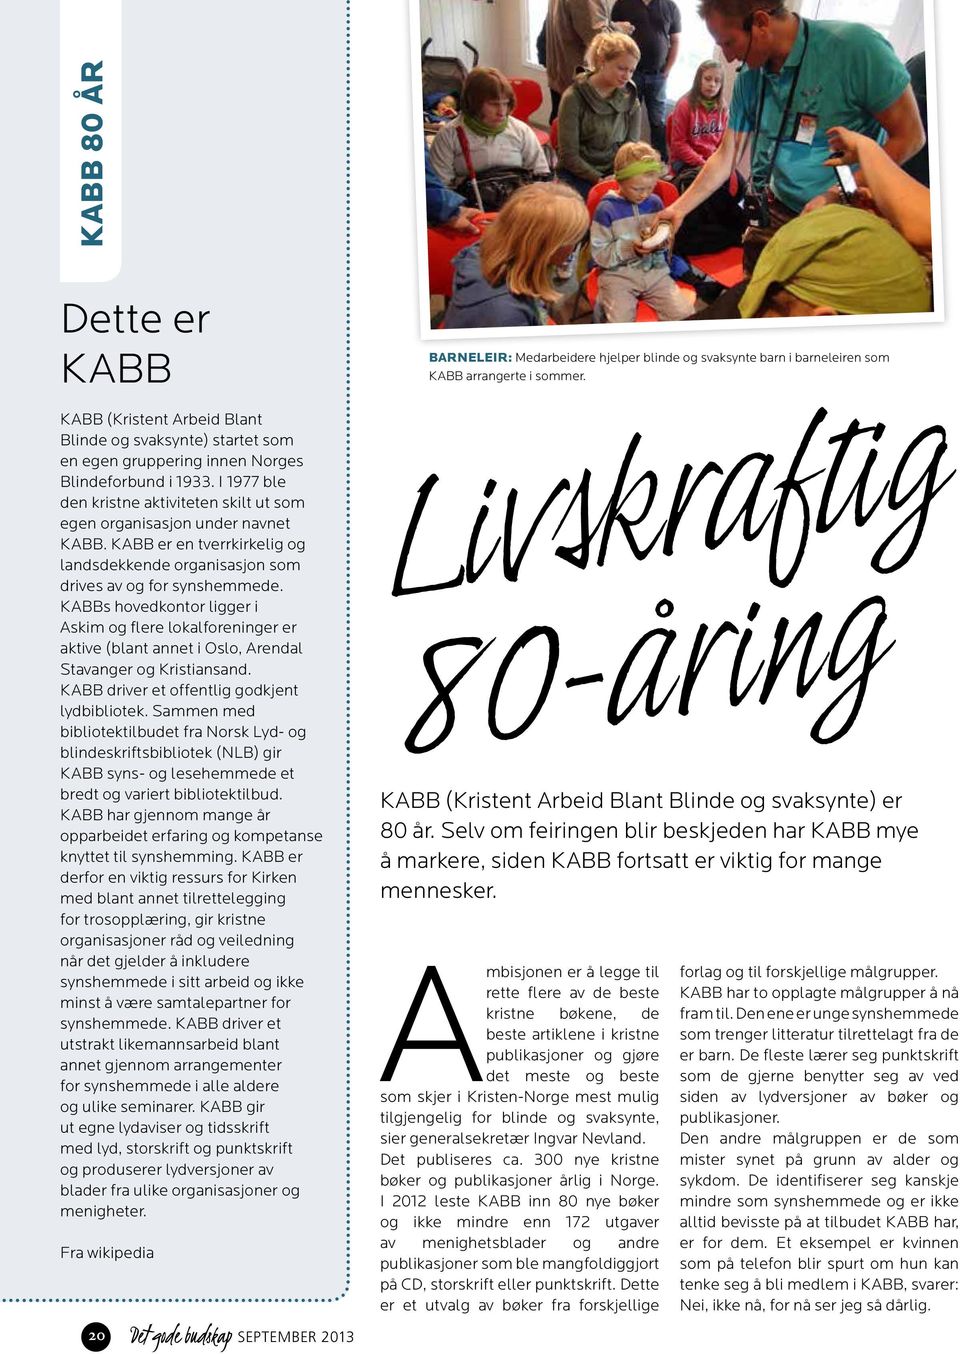 KABBs hovedkontor ligger i Askim og flere lokalforeninger er aktive (blant annet i Oslo, Arendal Stavanger og Kristiansand. KABB driver et offentlig godkjent lydbibliotek.